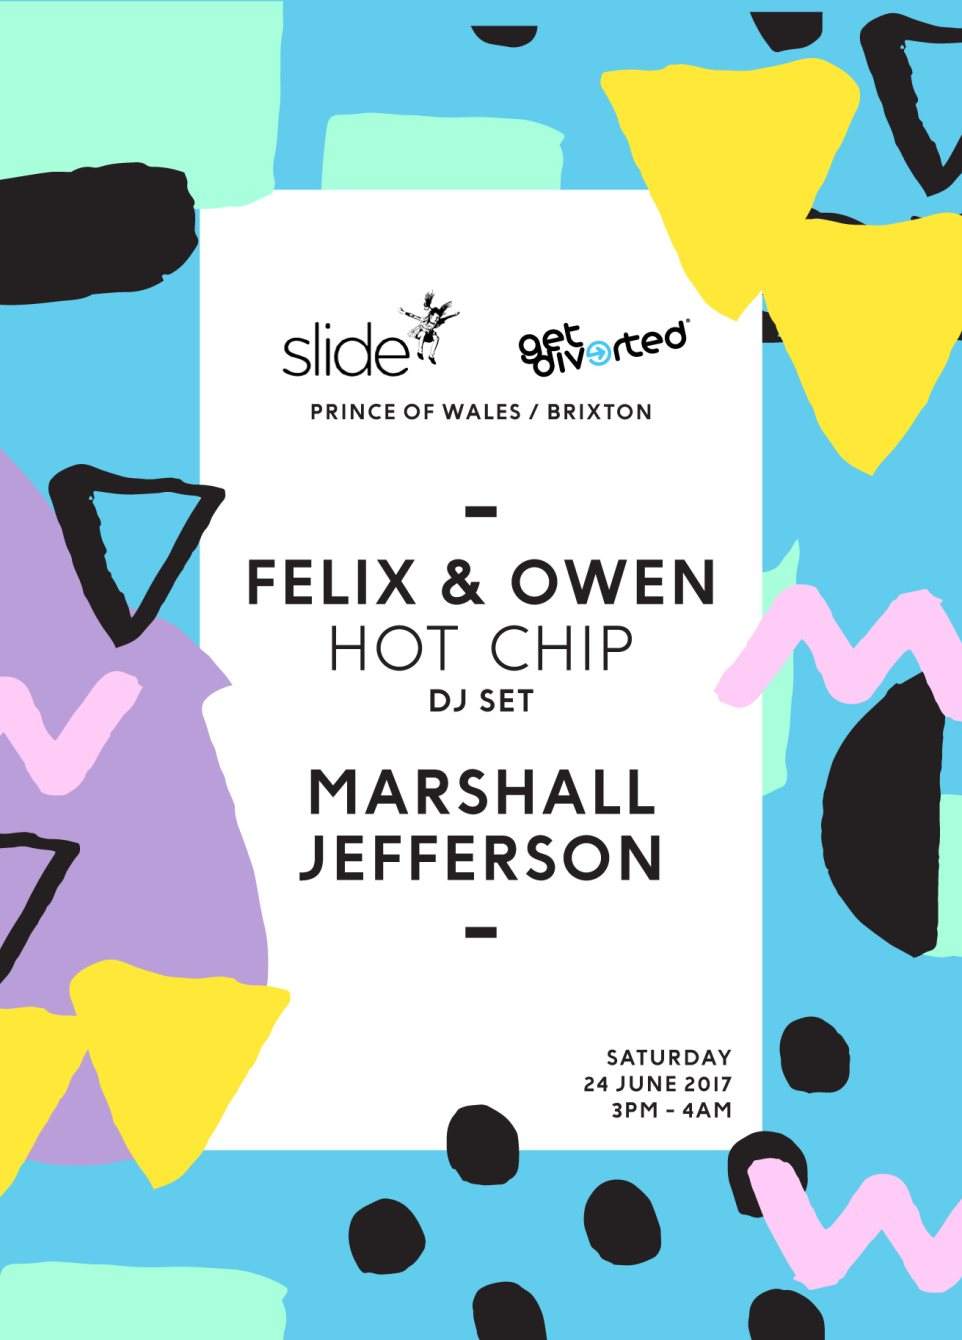 Slide & Get Diverted with Felix & Owen Hot Chip DJ set & Marshall Jefferson - Página frontal